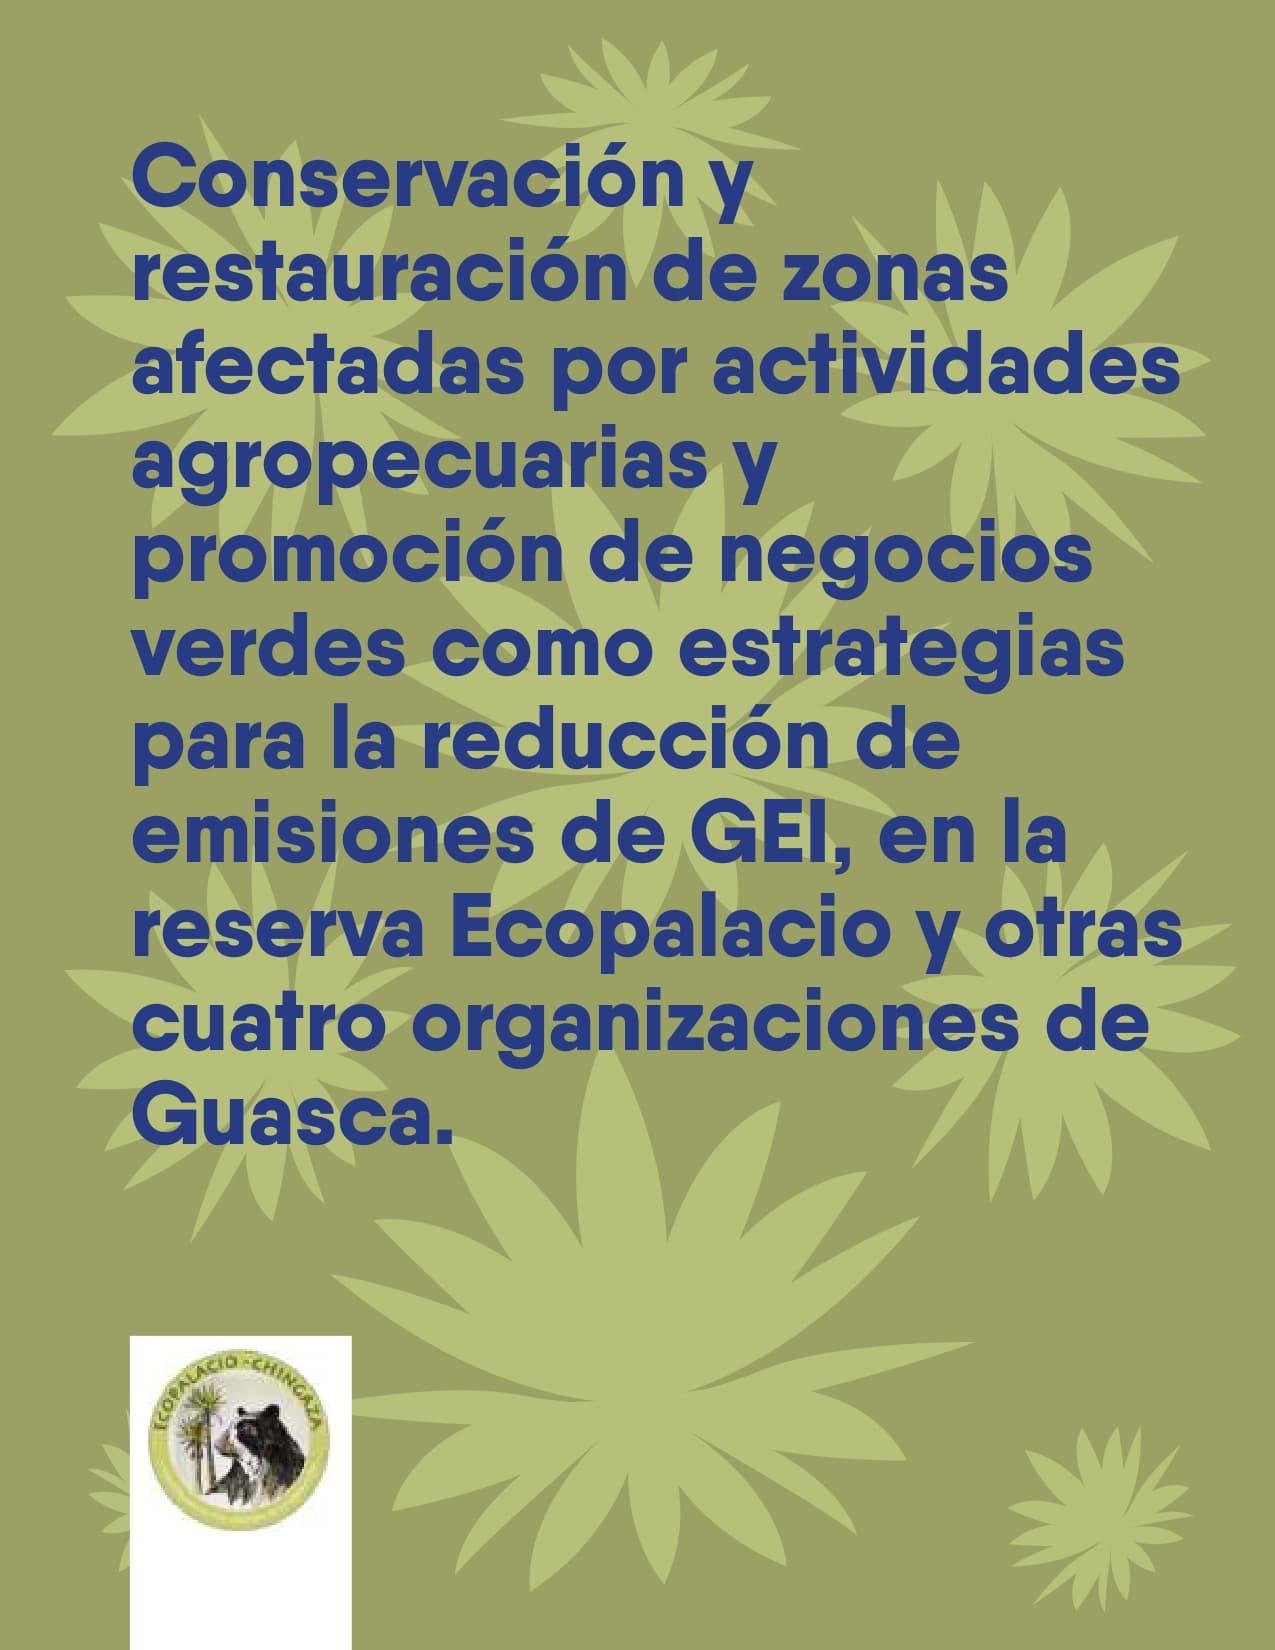 Conservación y restauración de zonas afectadas por actividades agropecuarias y promoción de negocios verdes como estrategias para la reducción de emisiones de GEI